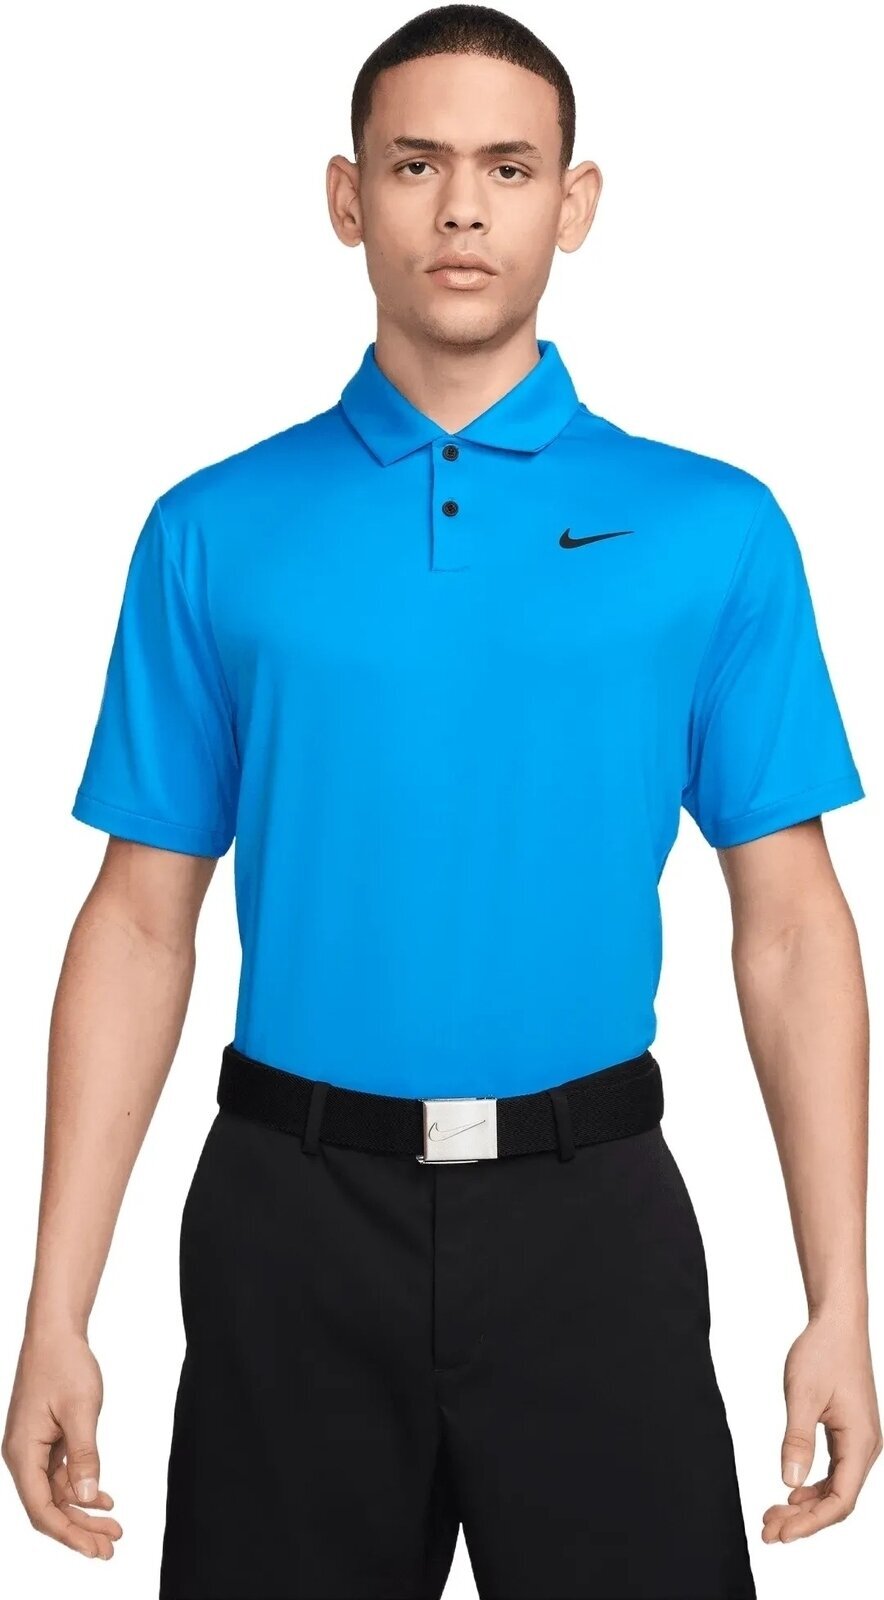 Poloshirt Nike Dri-Fit Tour Solid Mens Polo Light Photo Blue/Black L